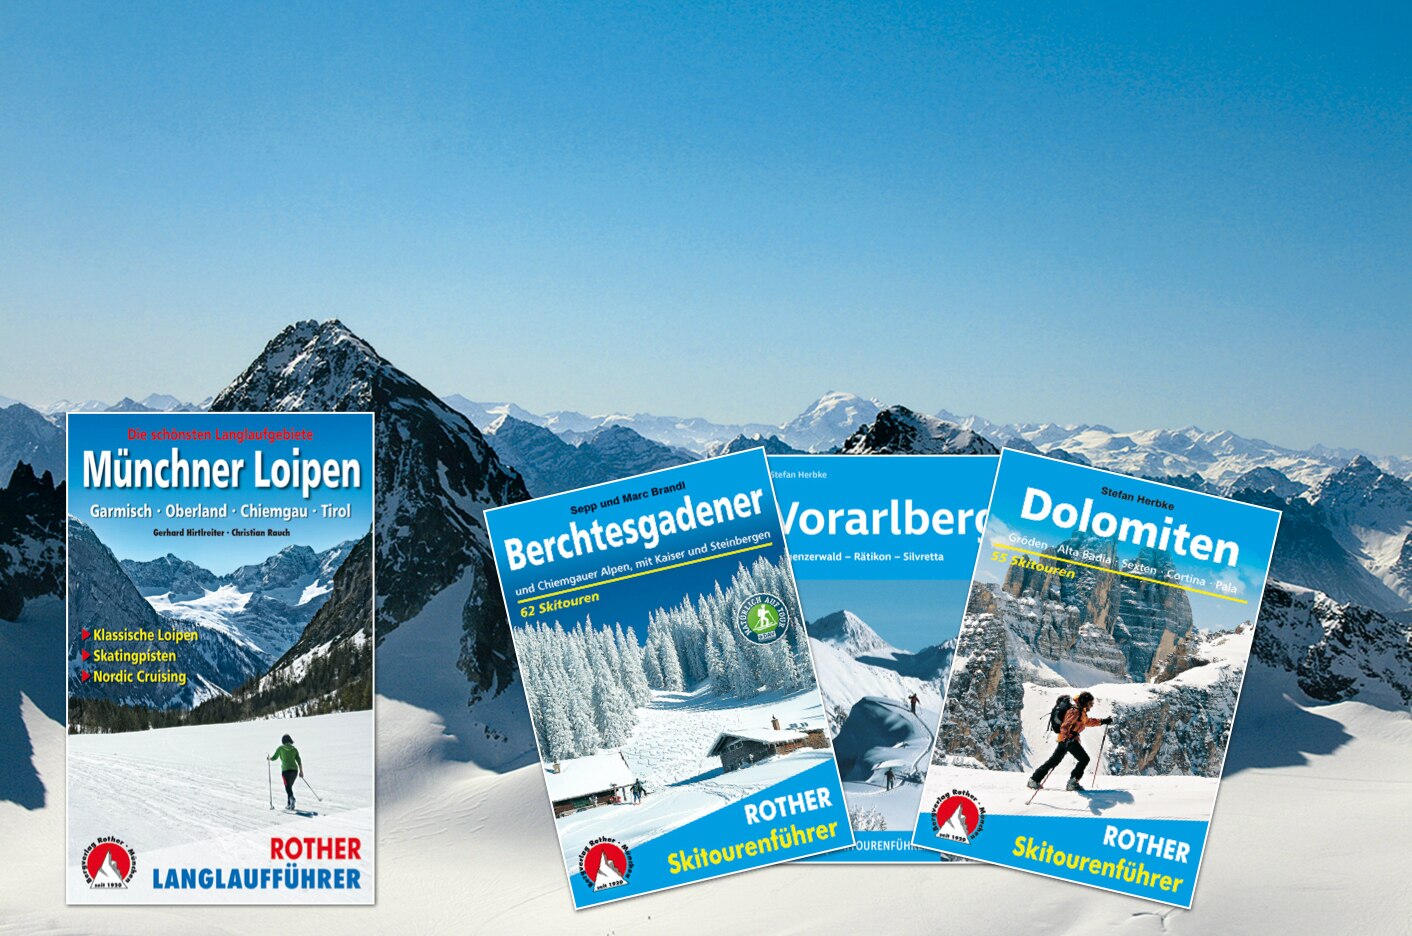 Weitere Rother-Skitourenführer und der Rother-Langlauführer